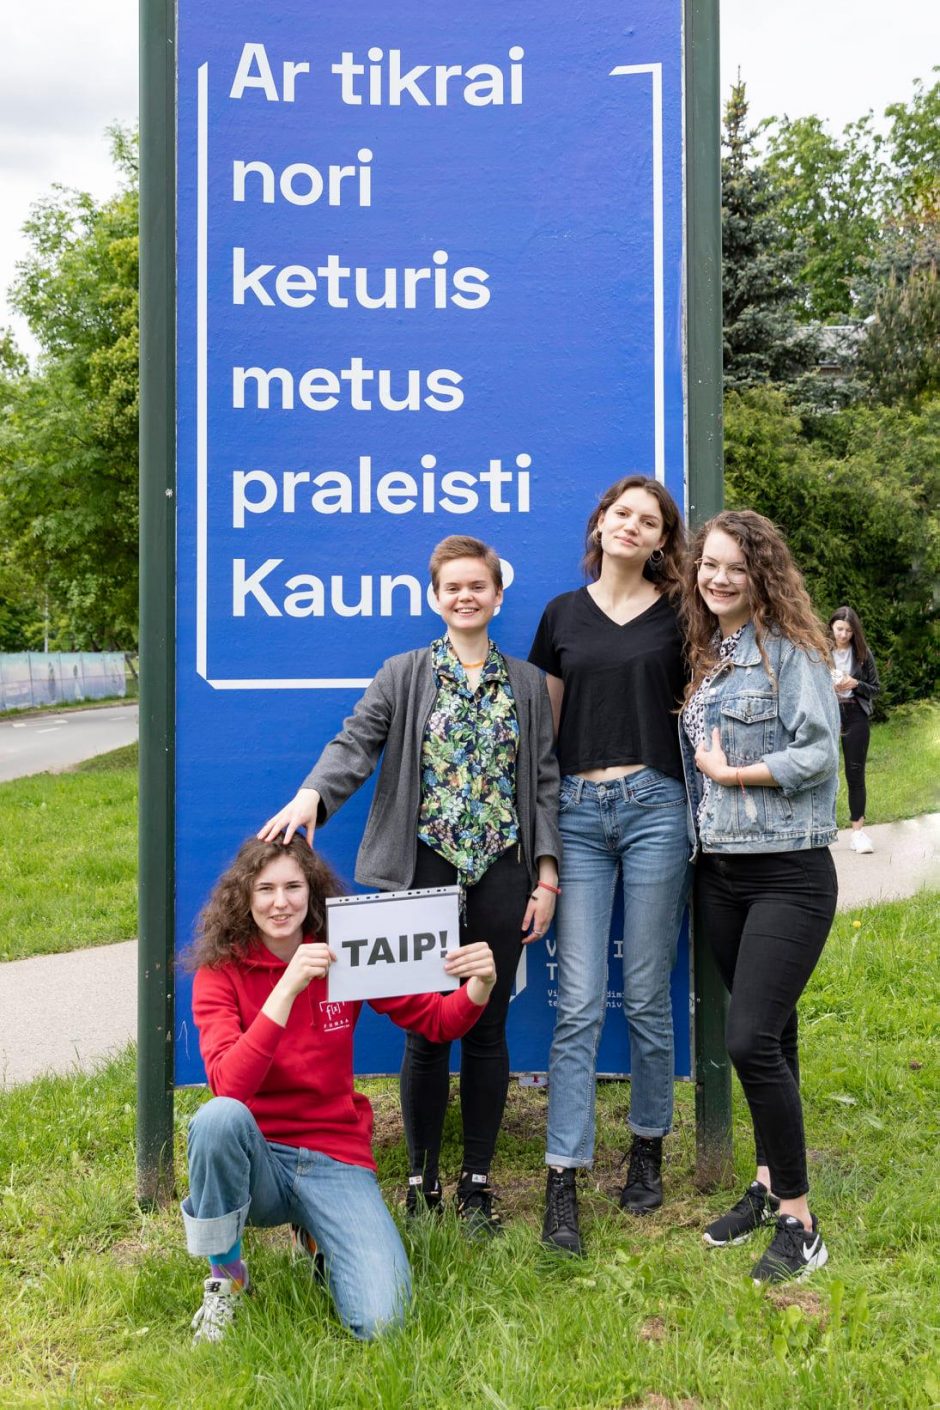 Studentų reakcija į VGTU reklamas Kaune: esame ten, kur norime būti